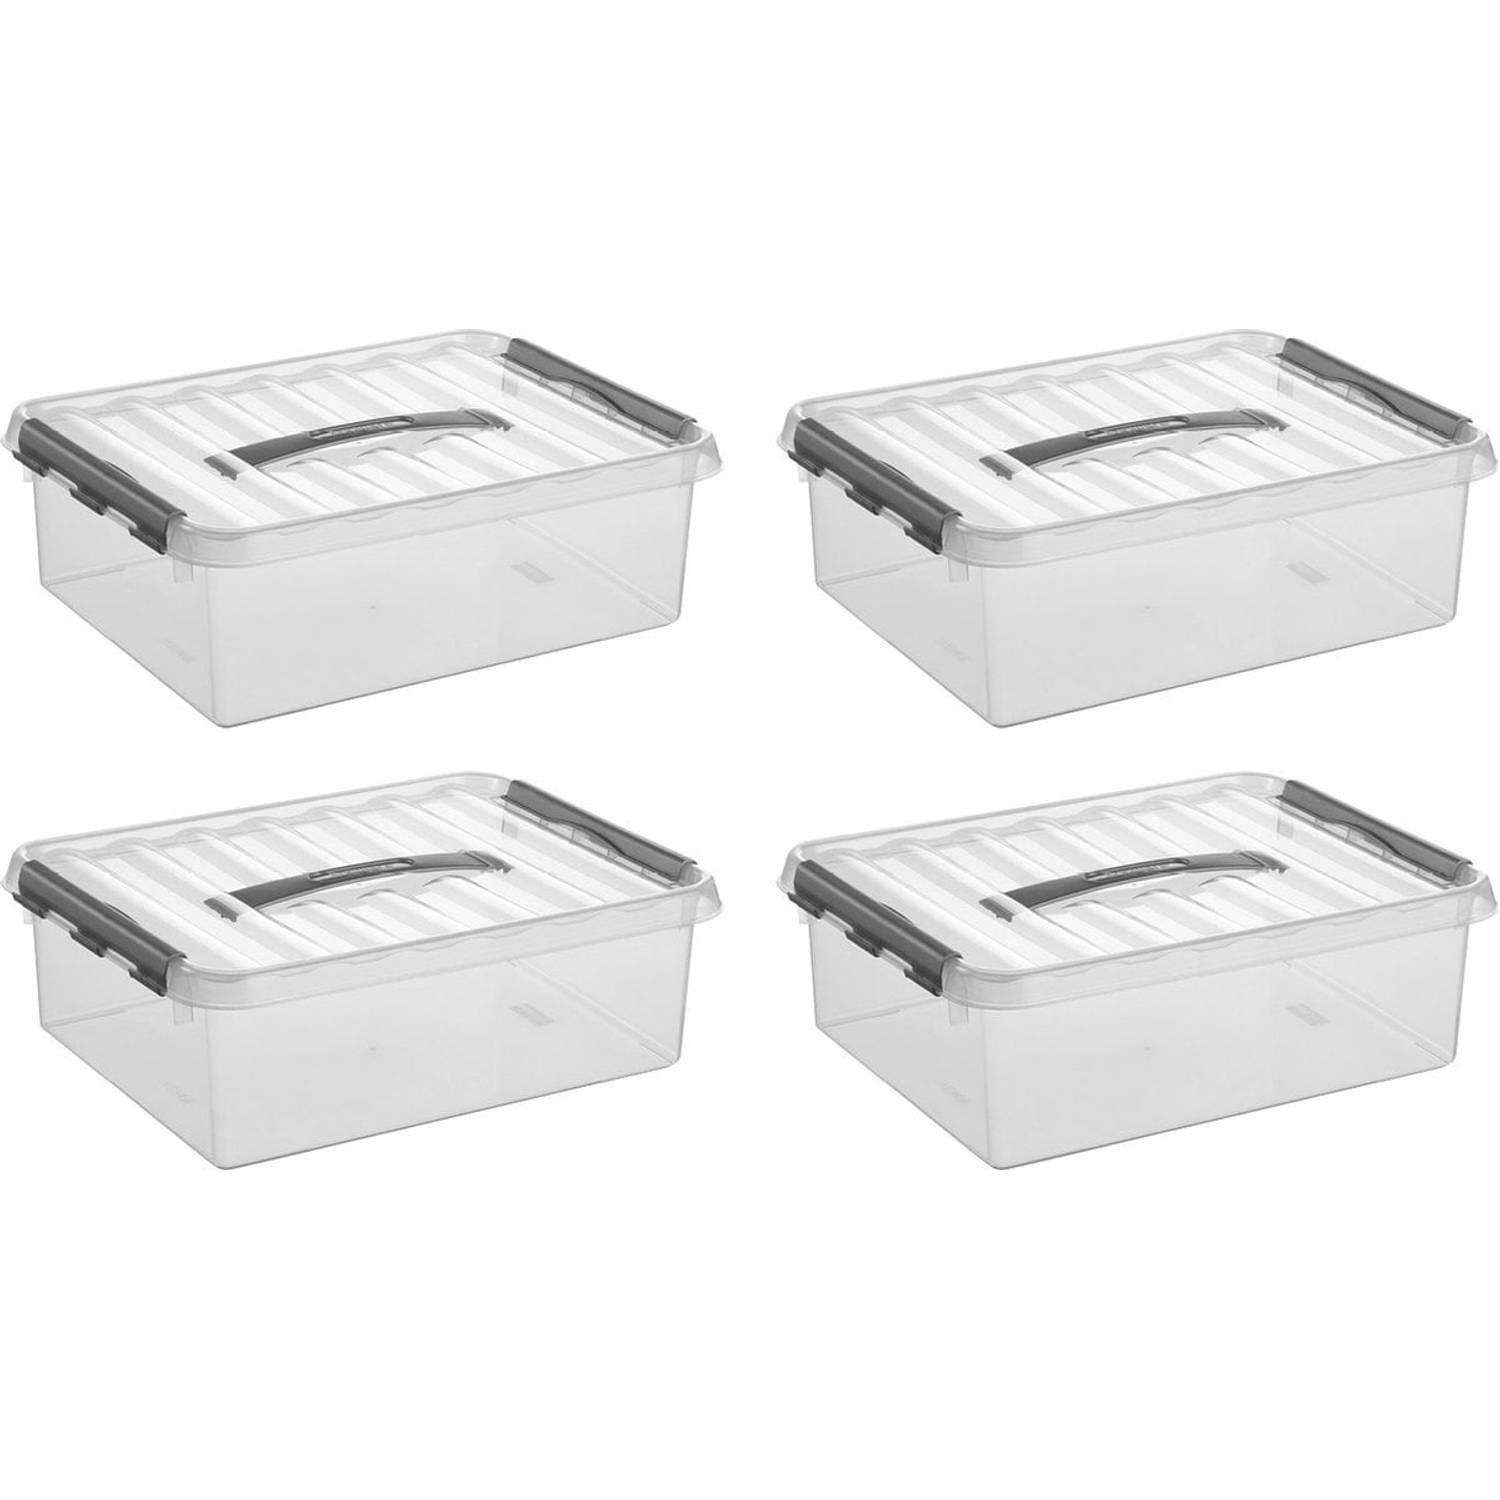 Sunware - Q-line opbergbox 10L - Set van 4 - Transparant/grijs